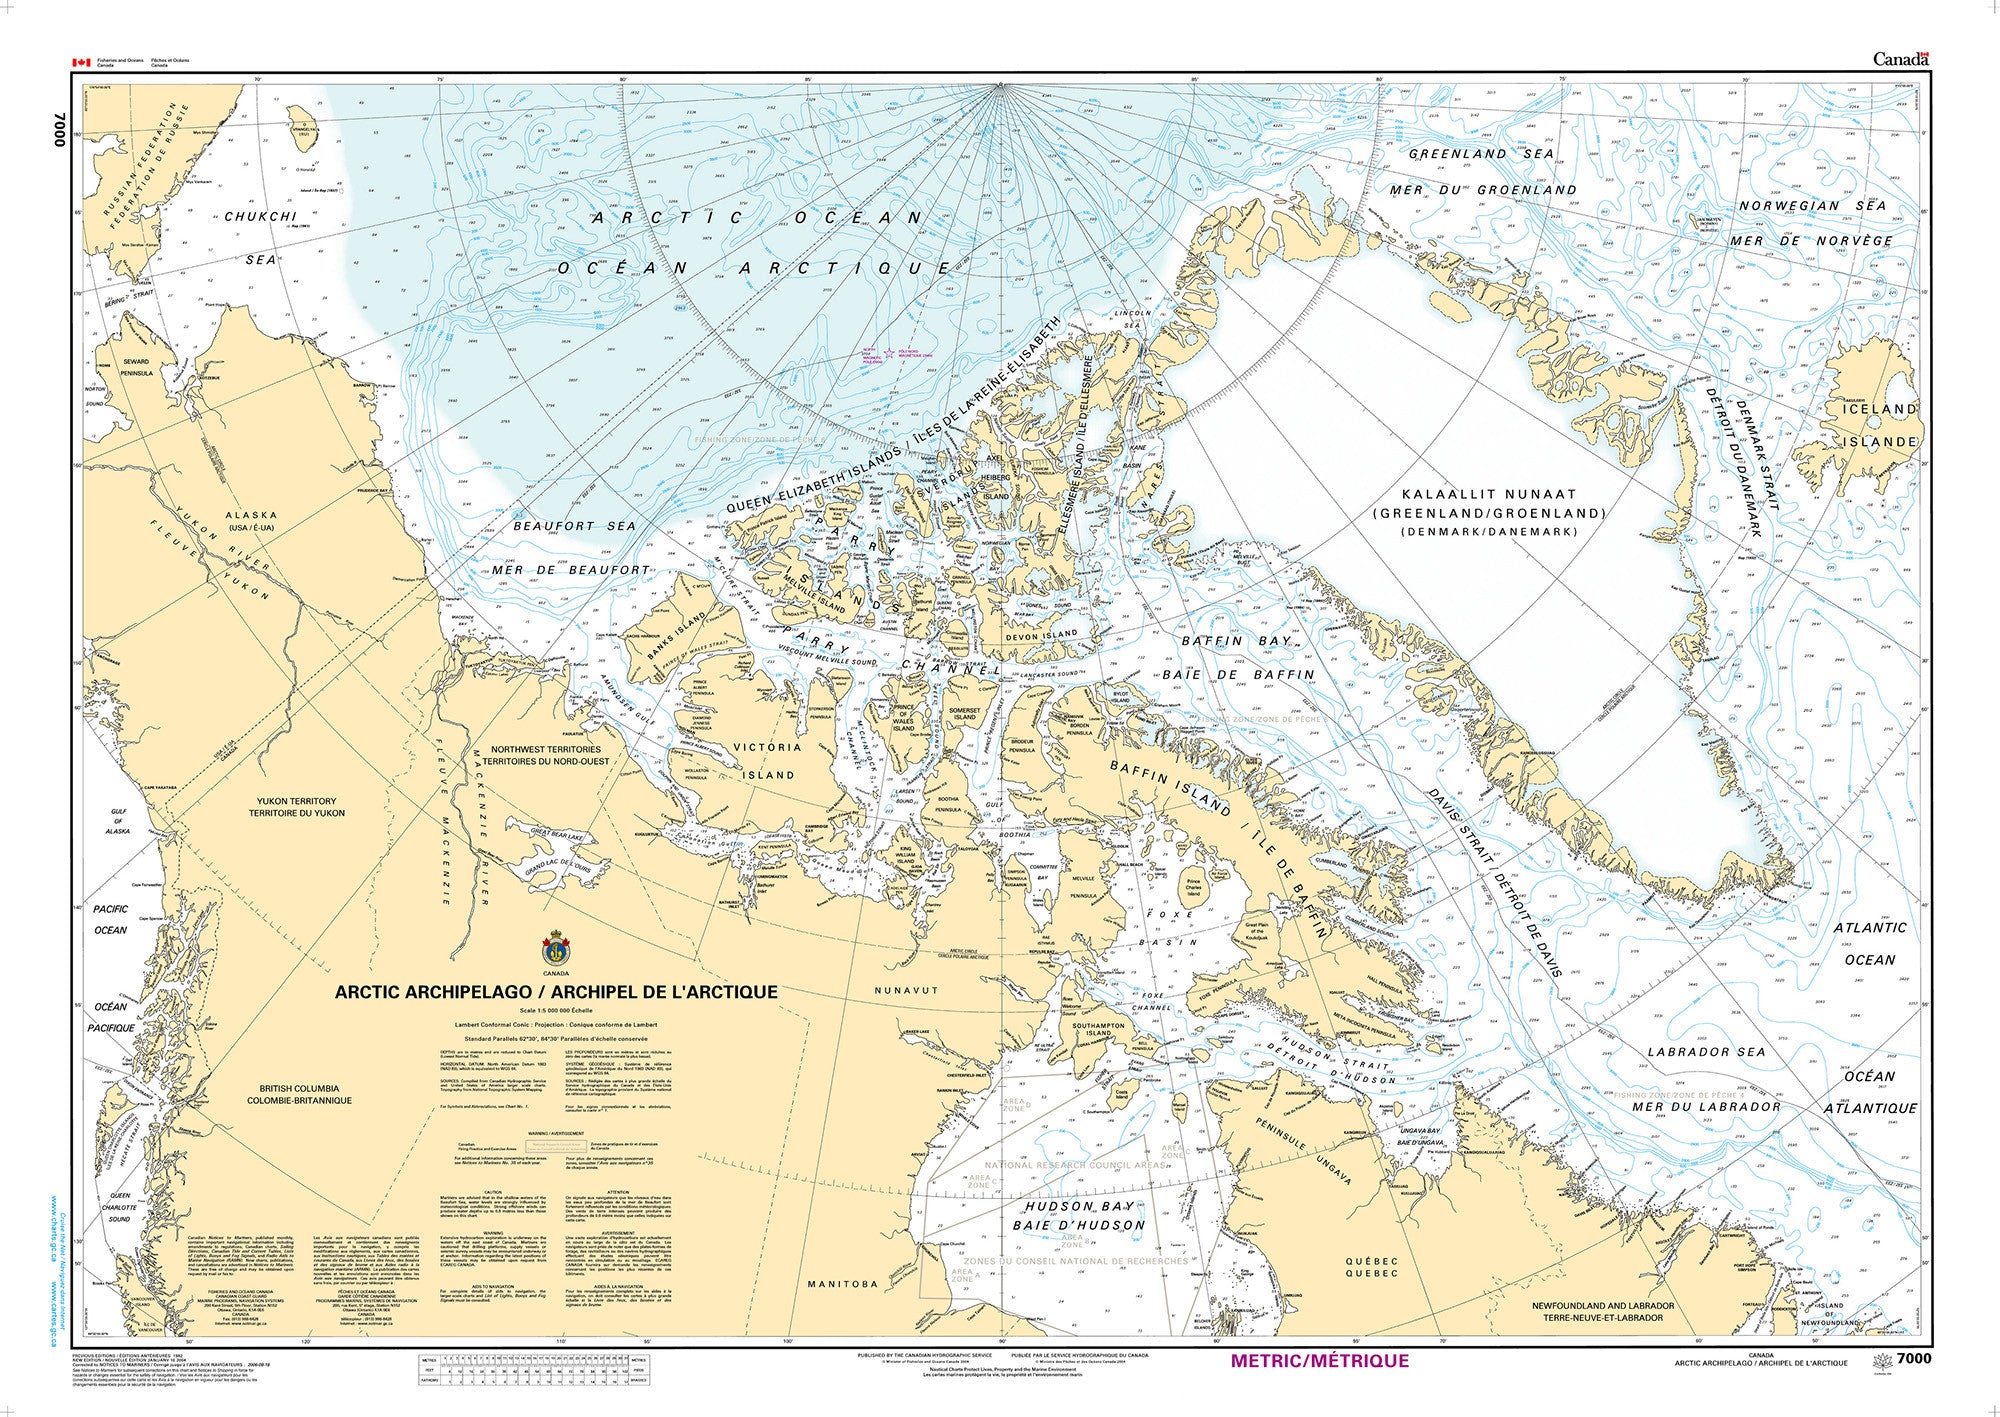 Canadian Hydrographic Service Nautical Chart CHS7000: Arctic Archipelago / Archipel de l'Arctique